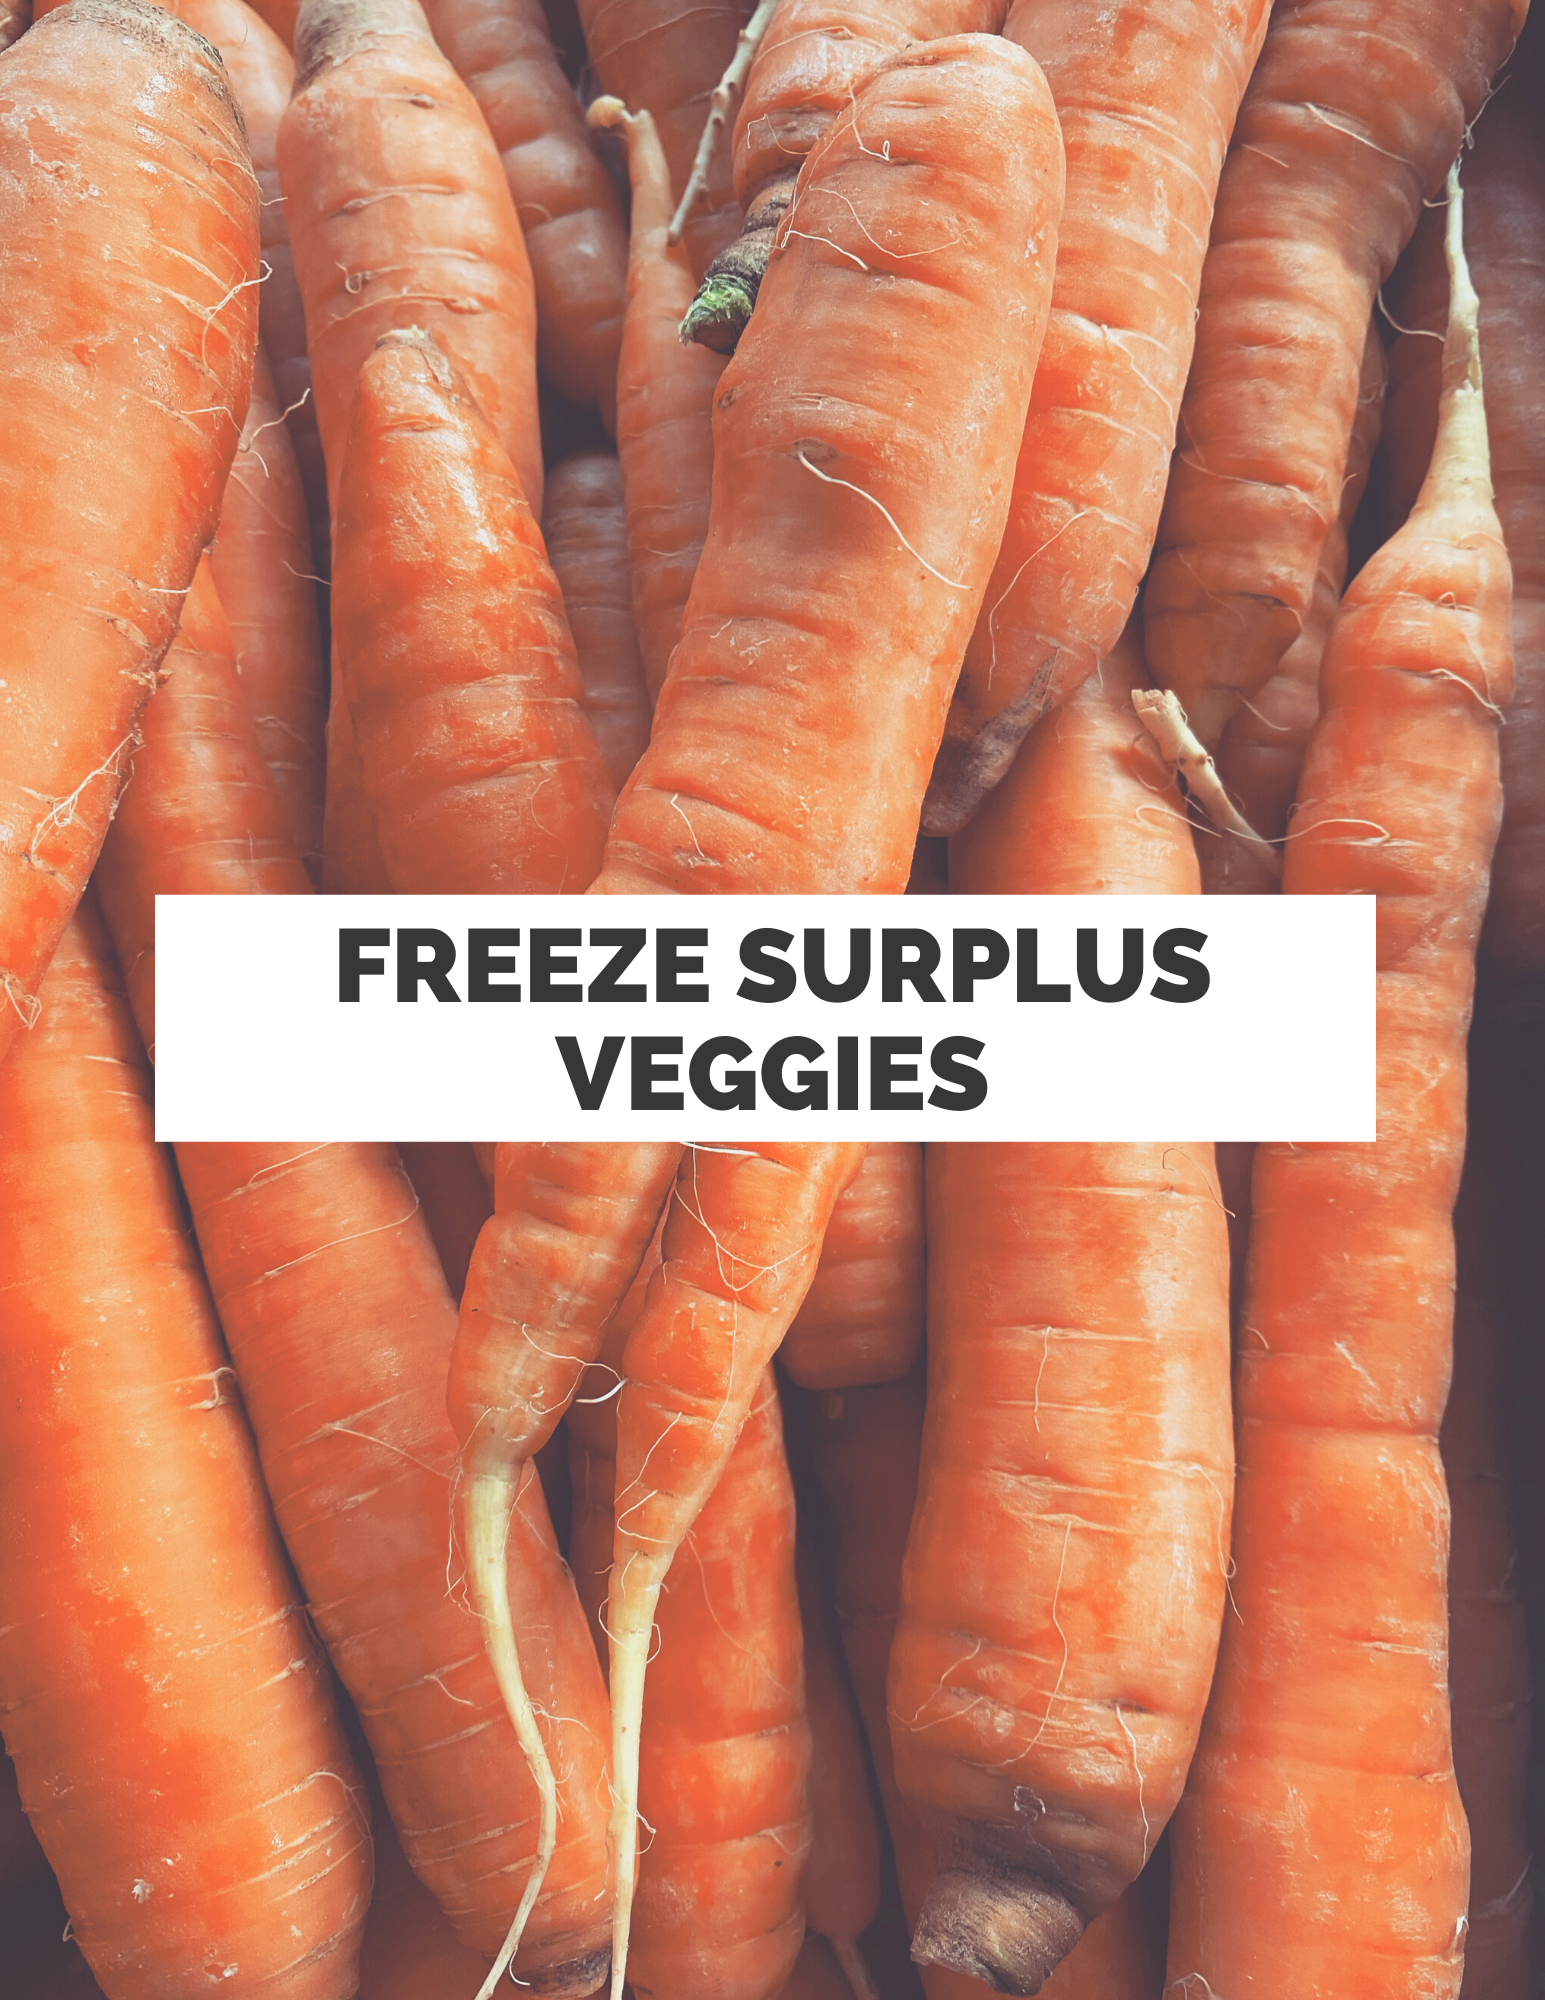 Freezing surplus veggies